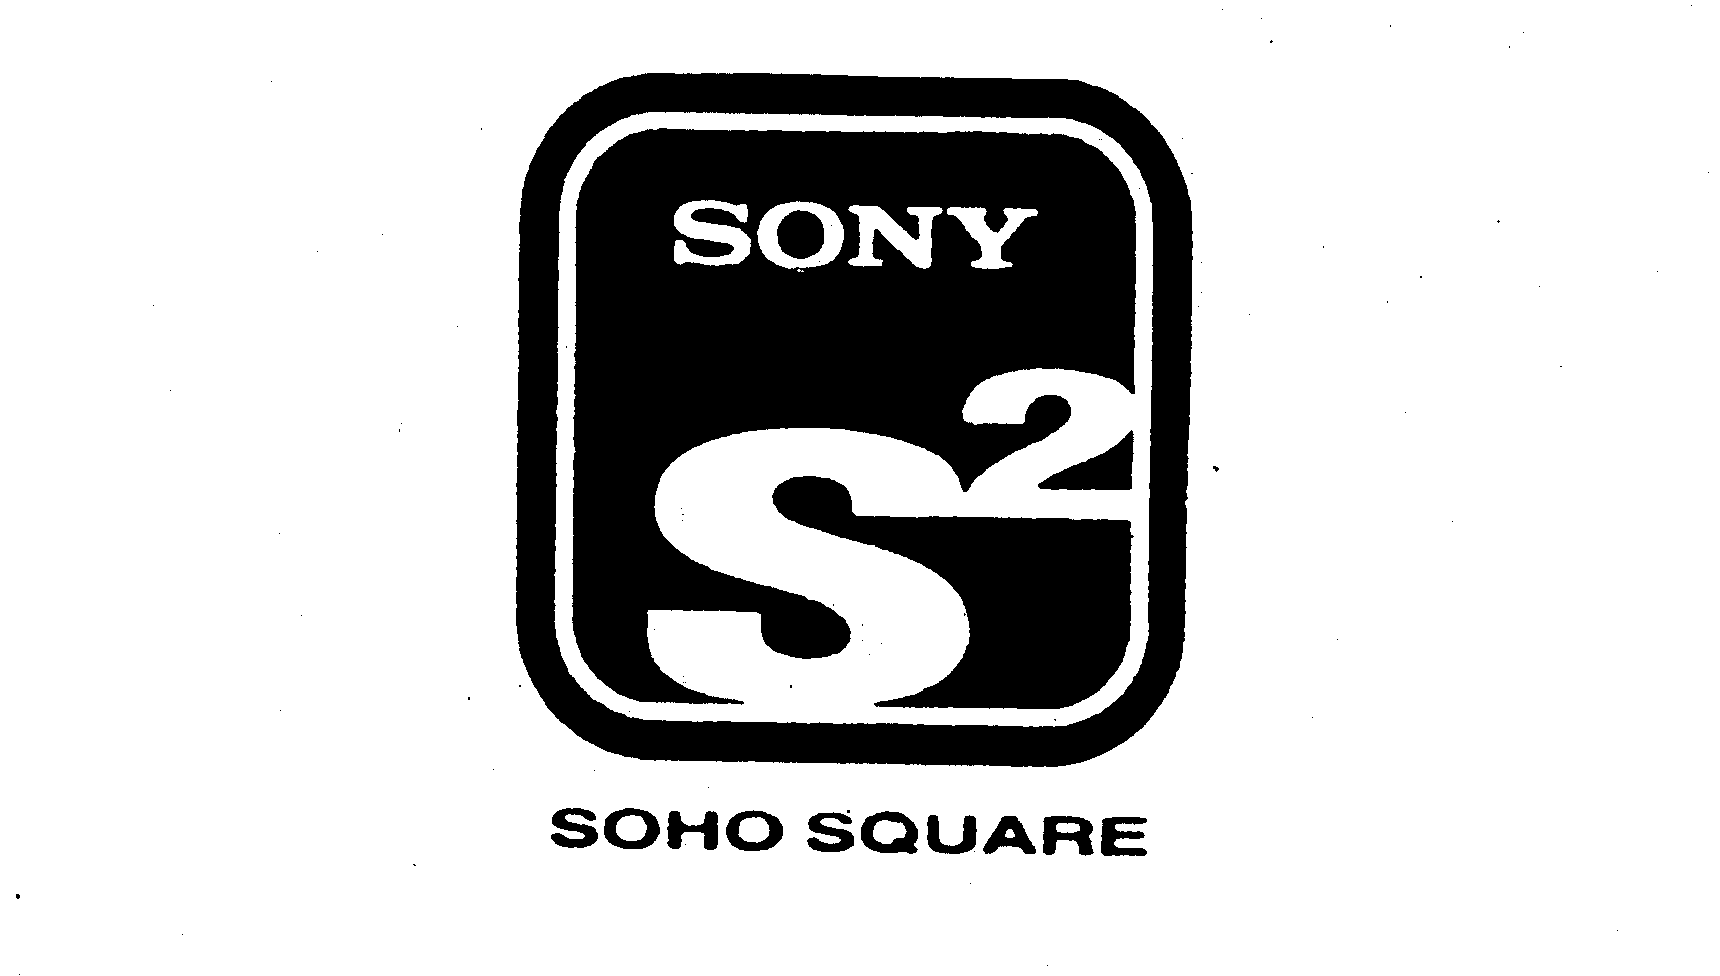 Trademark Logo SONY S2 SOHO SQUARE